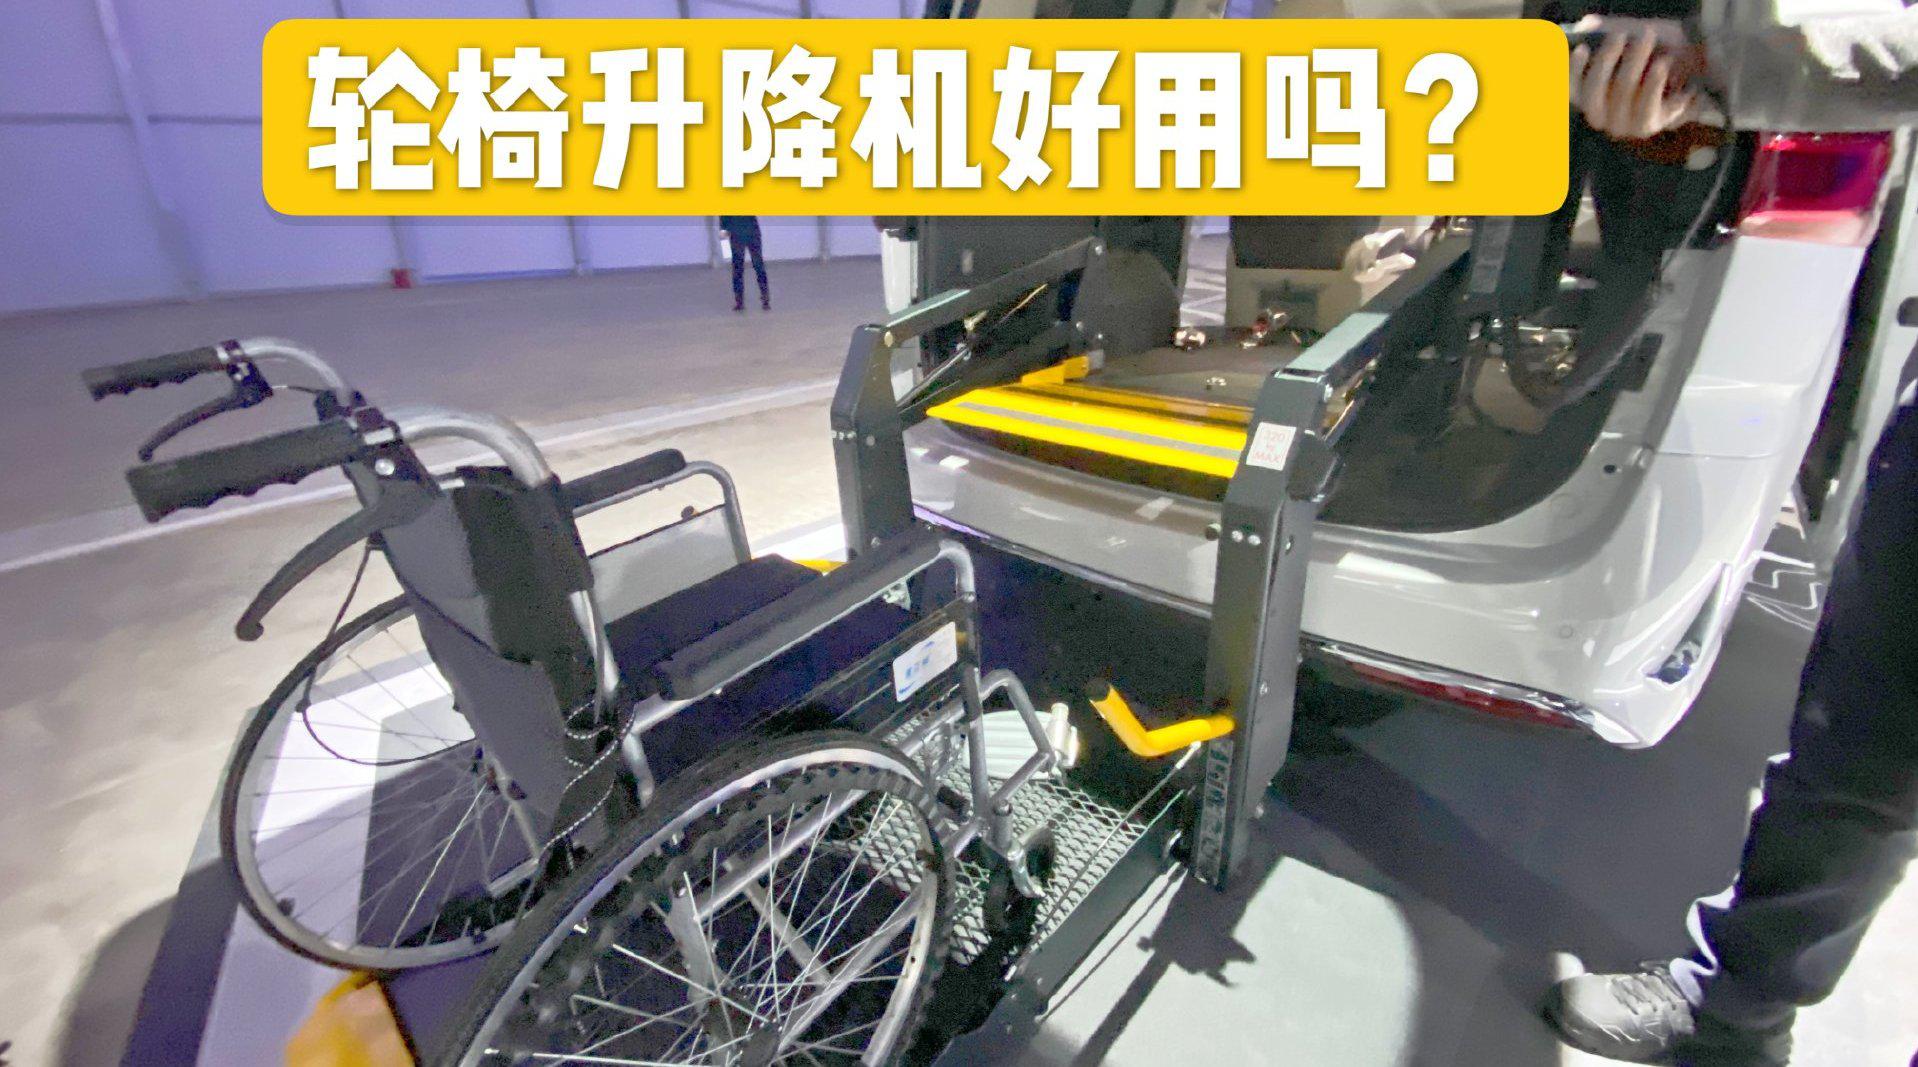 施乐辉残疾人老年人代步车S5-轮椅|老年代步车|电动轮椅|老年代步三轮车|老年代步购物车|残疾人代步车|轮椅配件-天津市施乐医疗器械有限公司